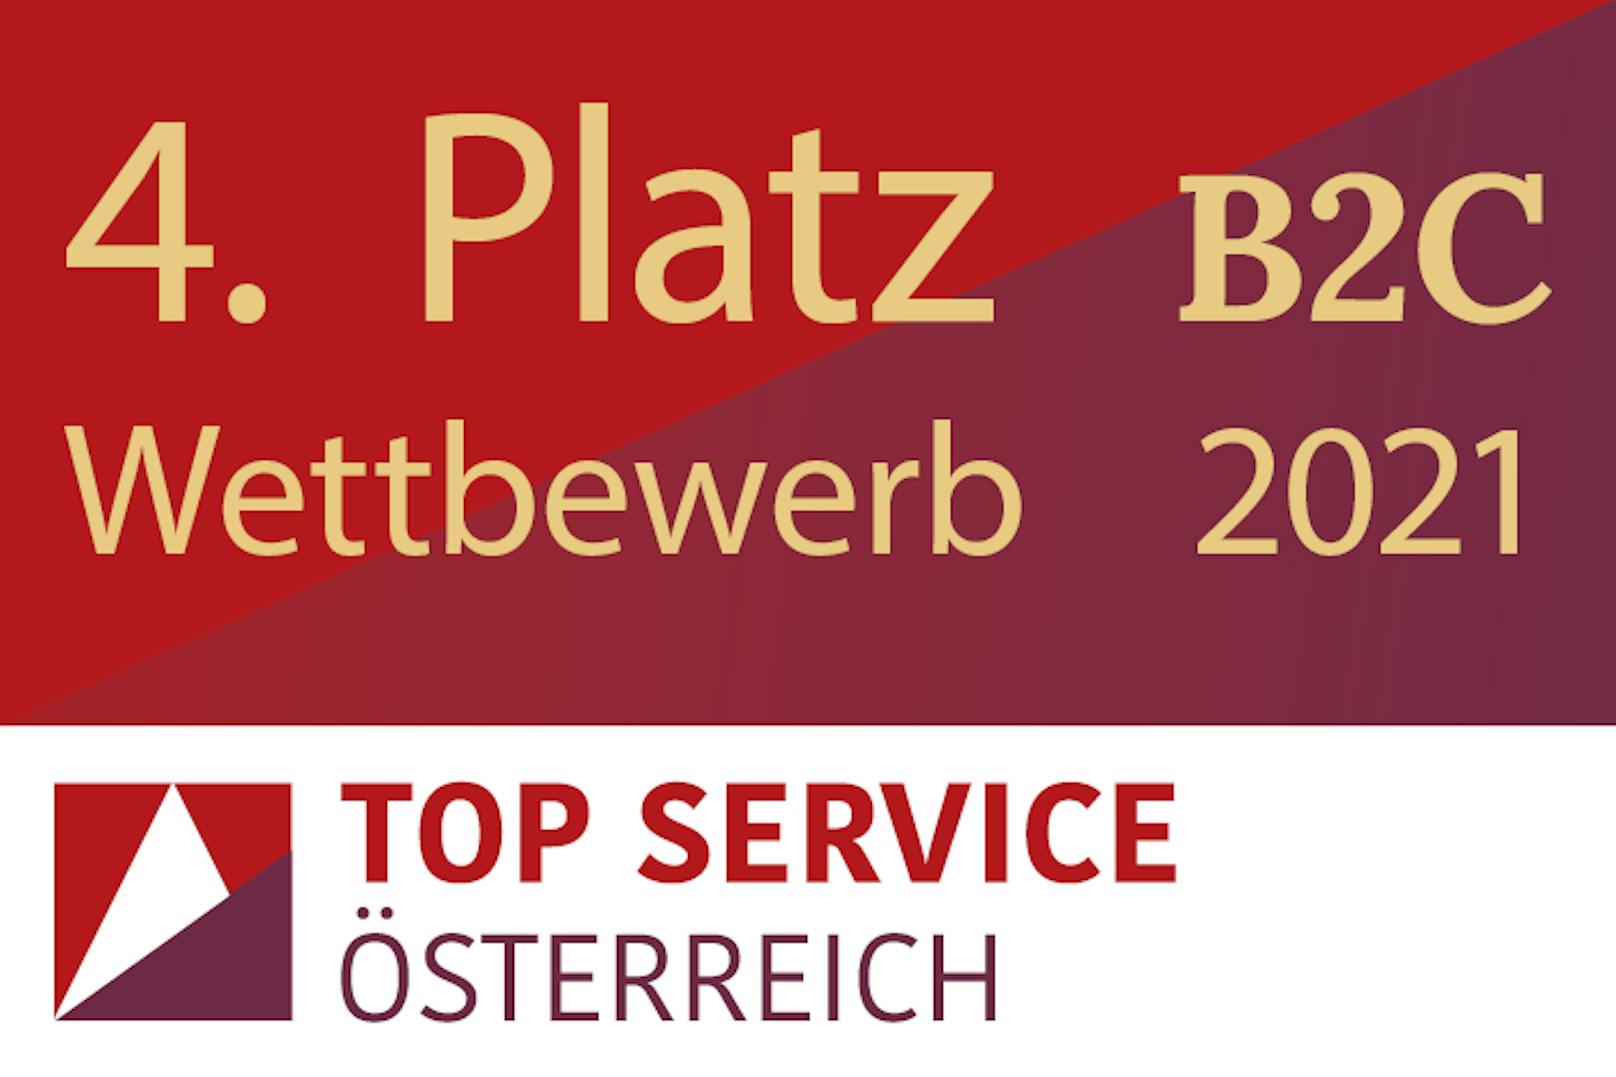 Top Service 2021: Samsung erneut unter den Top 5 in Österreich.